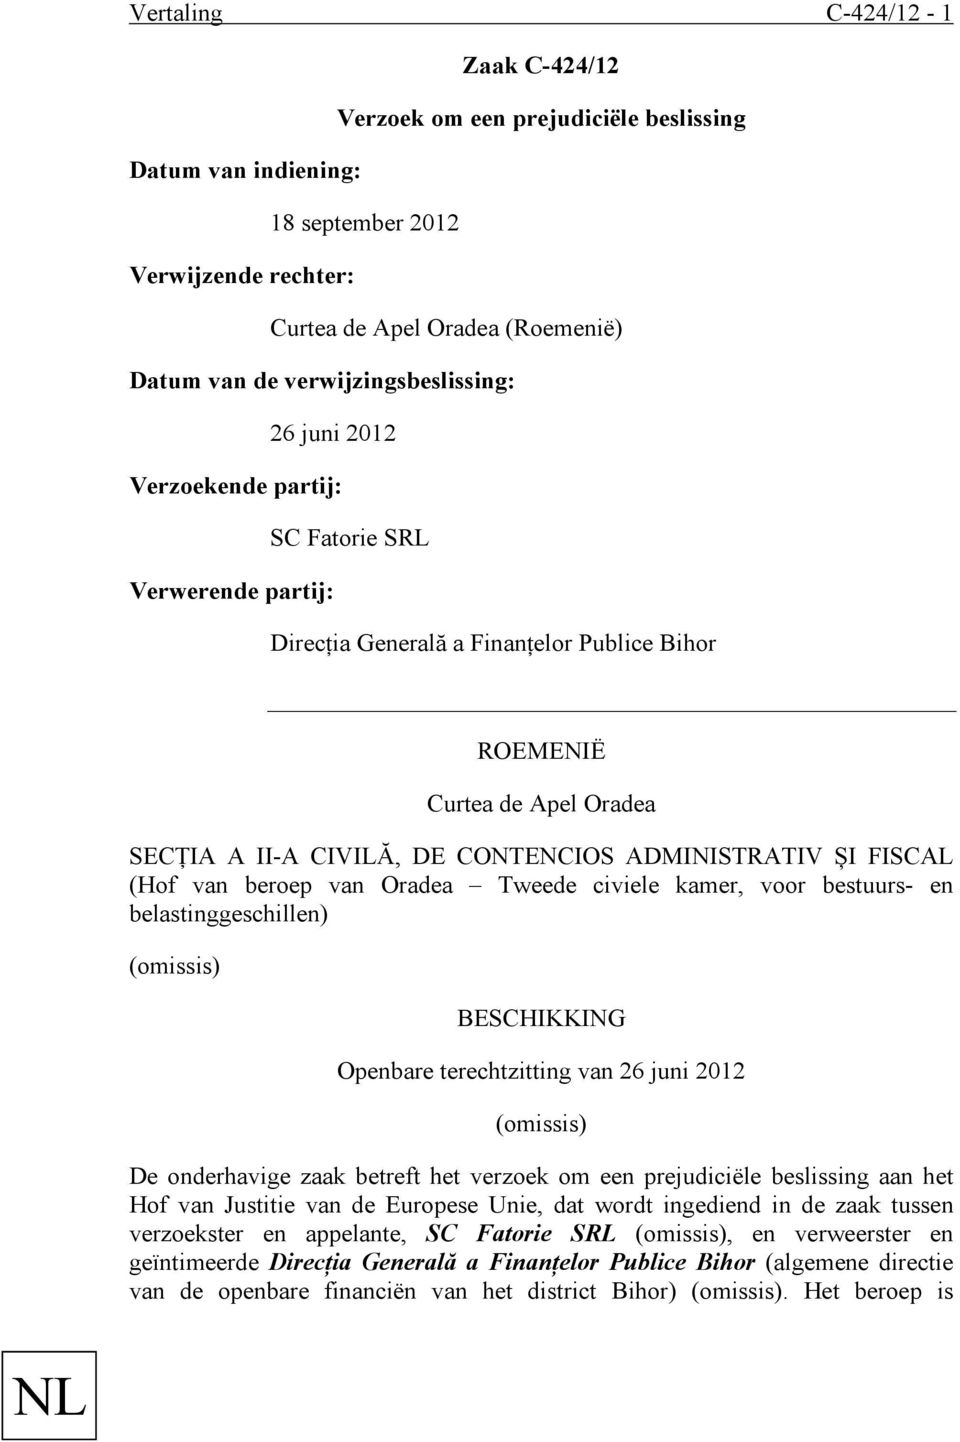 CONTENCIOS ADMINISTRATIV ȘI FISCAL (Hof van beroep van Oradea Tweede civiele kamer, voor bestuurs- en belastinggeschillen) BESCHIKKING Openbare terechtzitting van 26 juni 2012 De onderhavige zaak